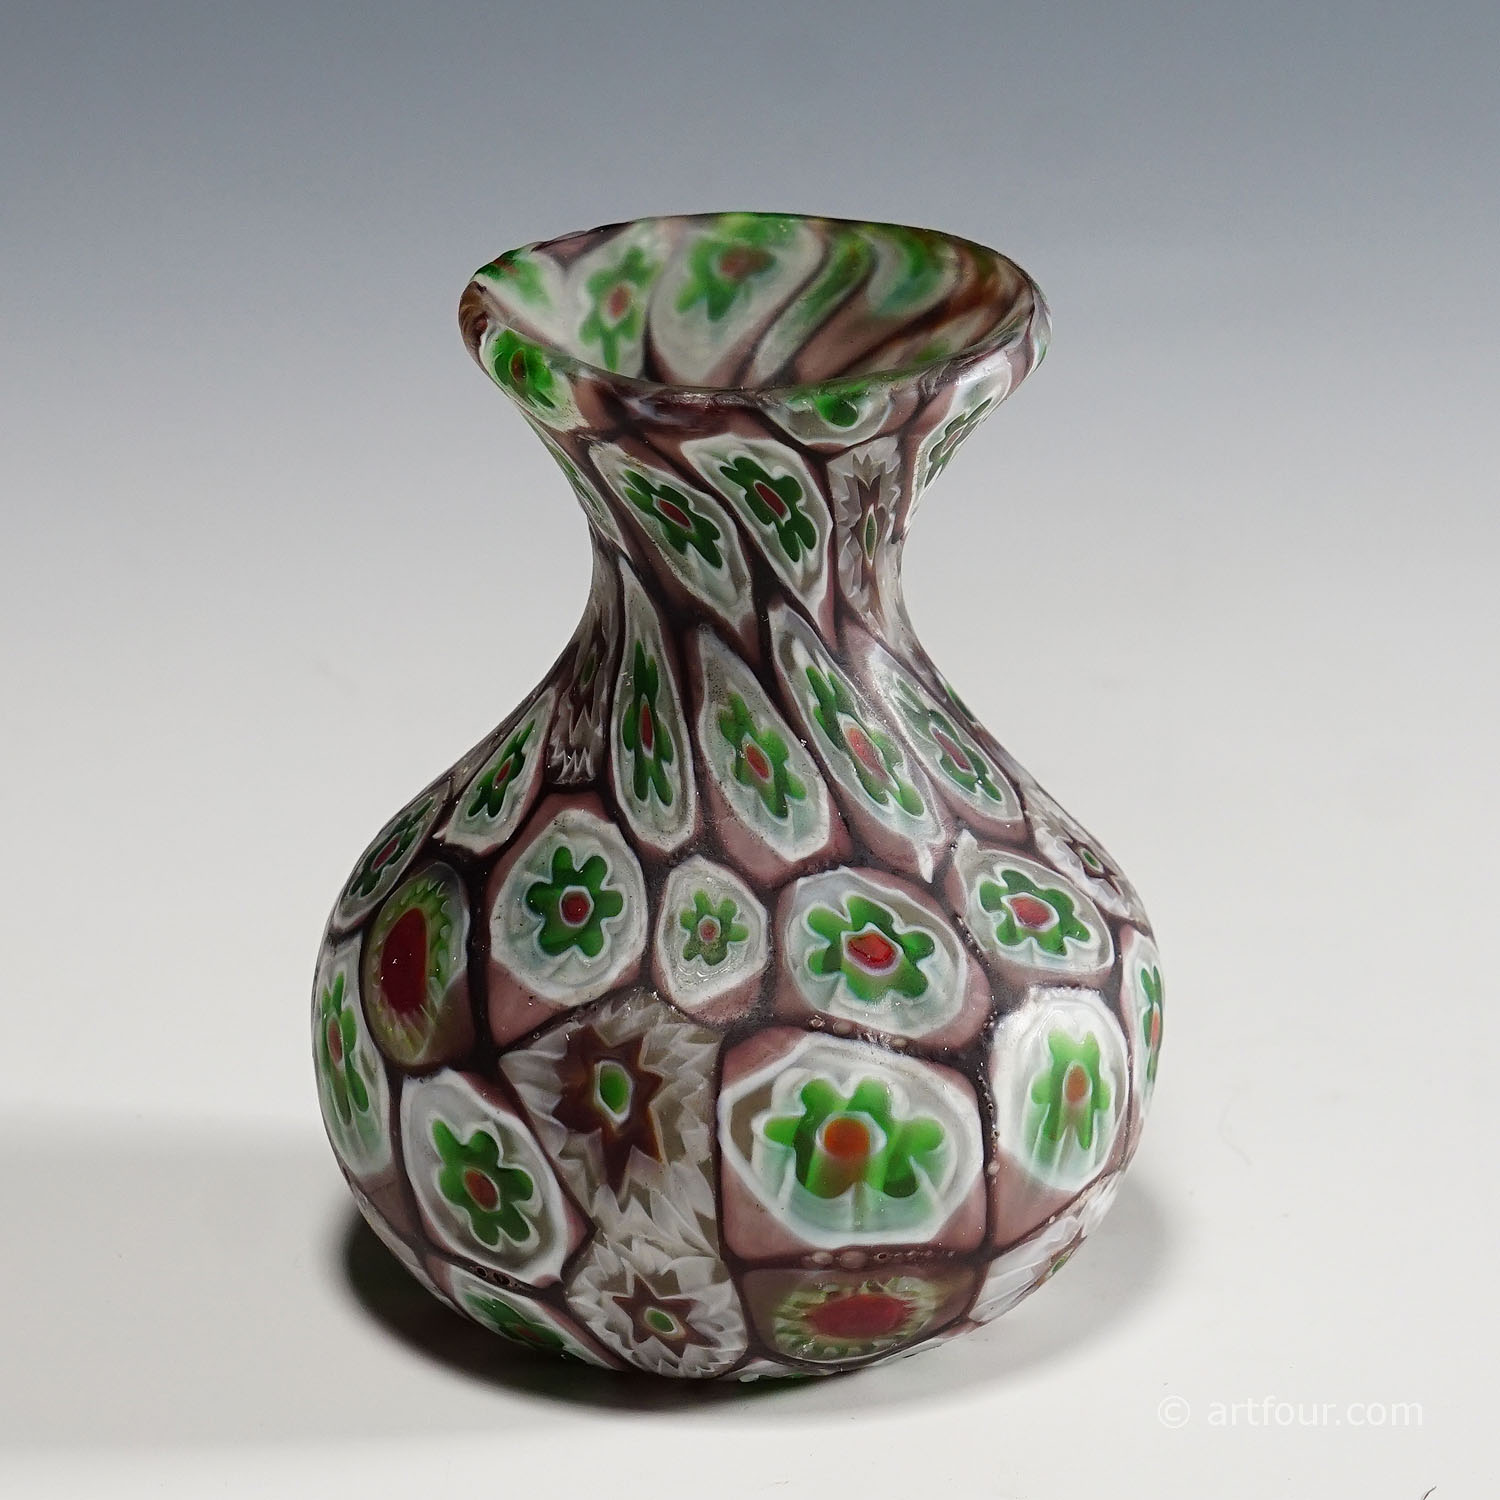 Small Millefiori Vase in Purple, Green and White, Fratelli Toso Murano 1910